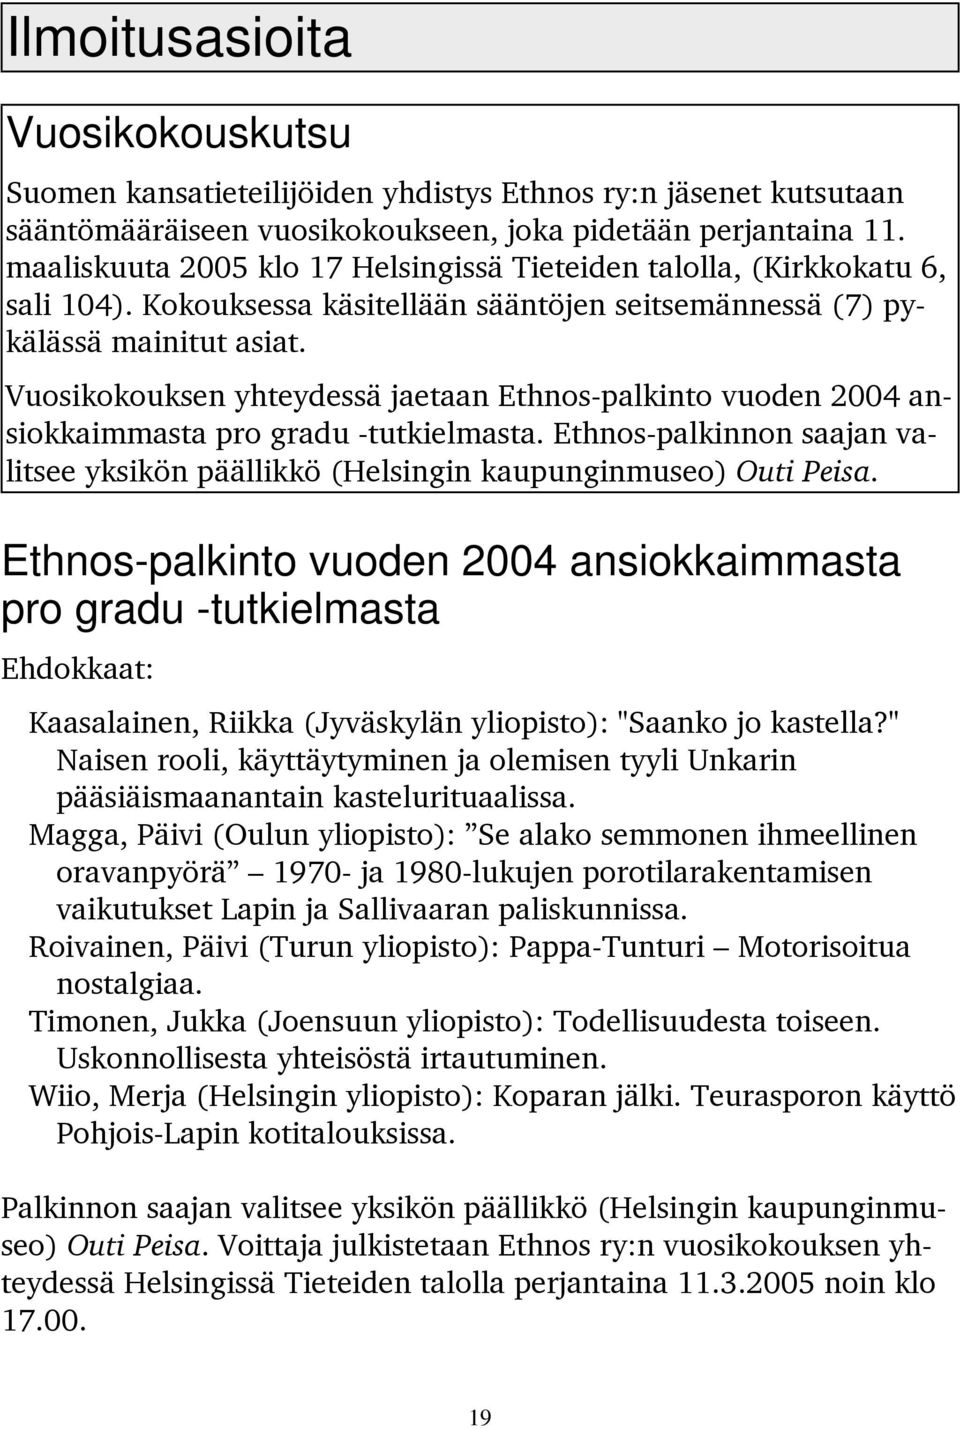 Vuosikokouksen yhteydessä jaetaan Ethnos-palkinto vuoden 2004 ansiokkaimmasta pro gradu -tutkielmasta. Ethnos-palkinnon saajan valitsee yksikön päällikkö (Helsingin kaupunginmuseo) Outi Peisa.